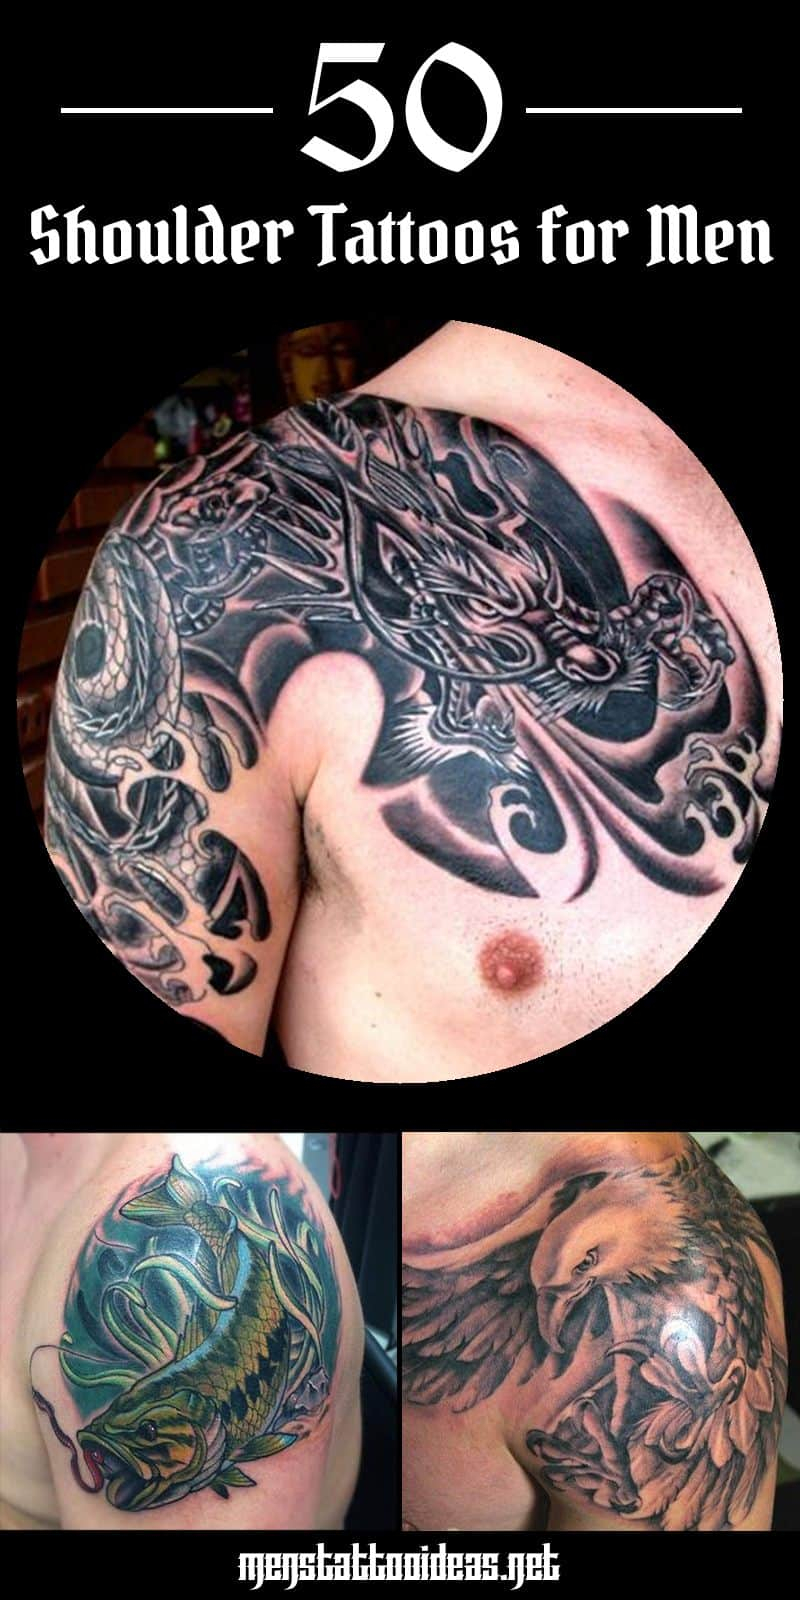 Shoulder Tattoos For Men Designs On Shoulder For Guys in size 800 X 1600